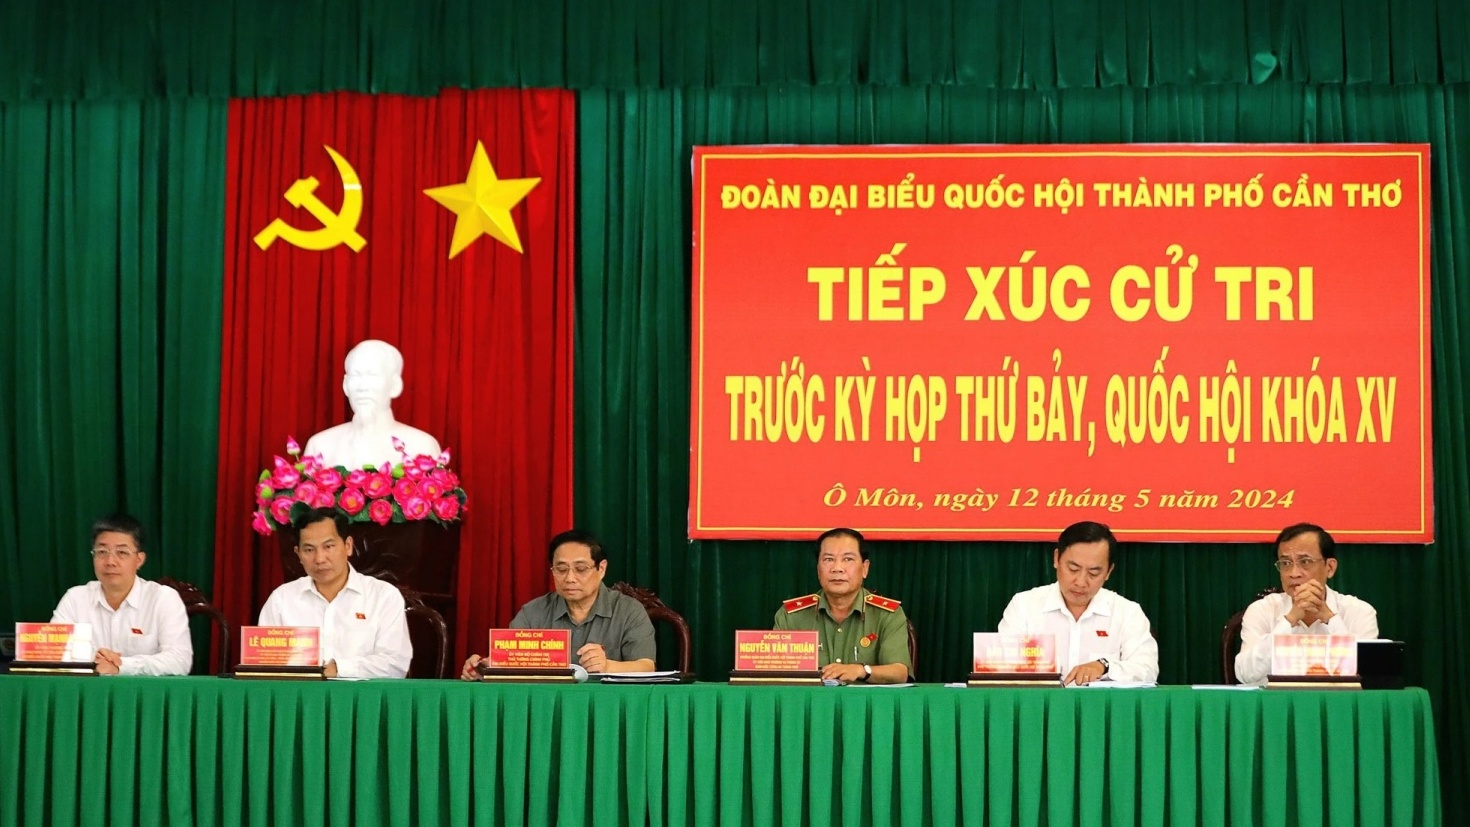 Thủ tướng Phạm Minh Chính thông tin tới củ tri về tiến độ chuỗi dự án Lô B - Ô Môn